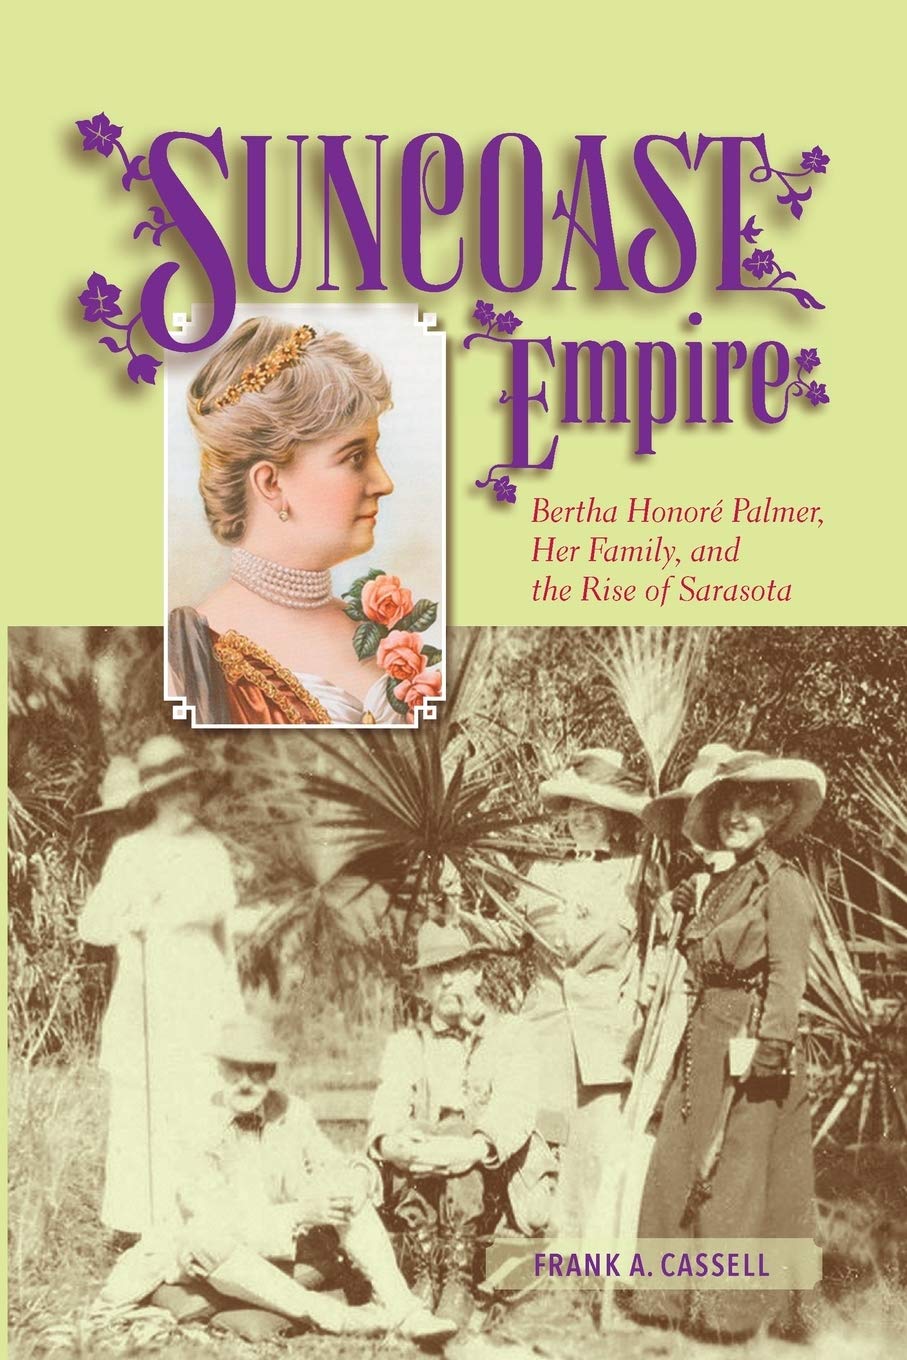 Suncoast Empire Book cover 